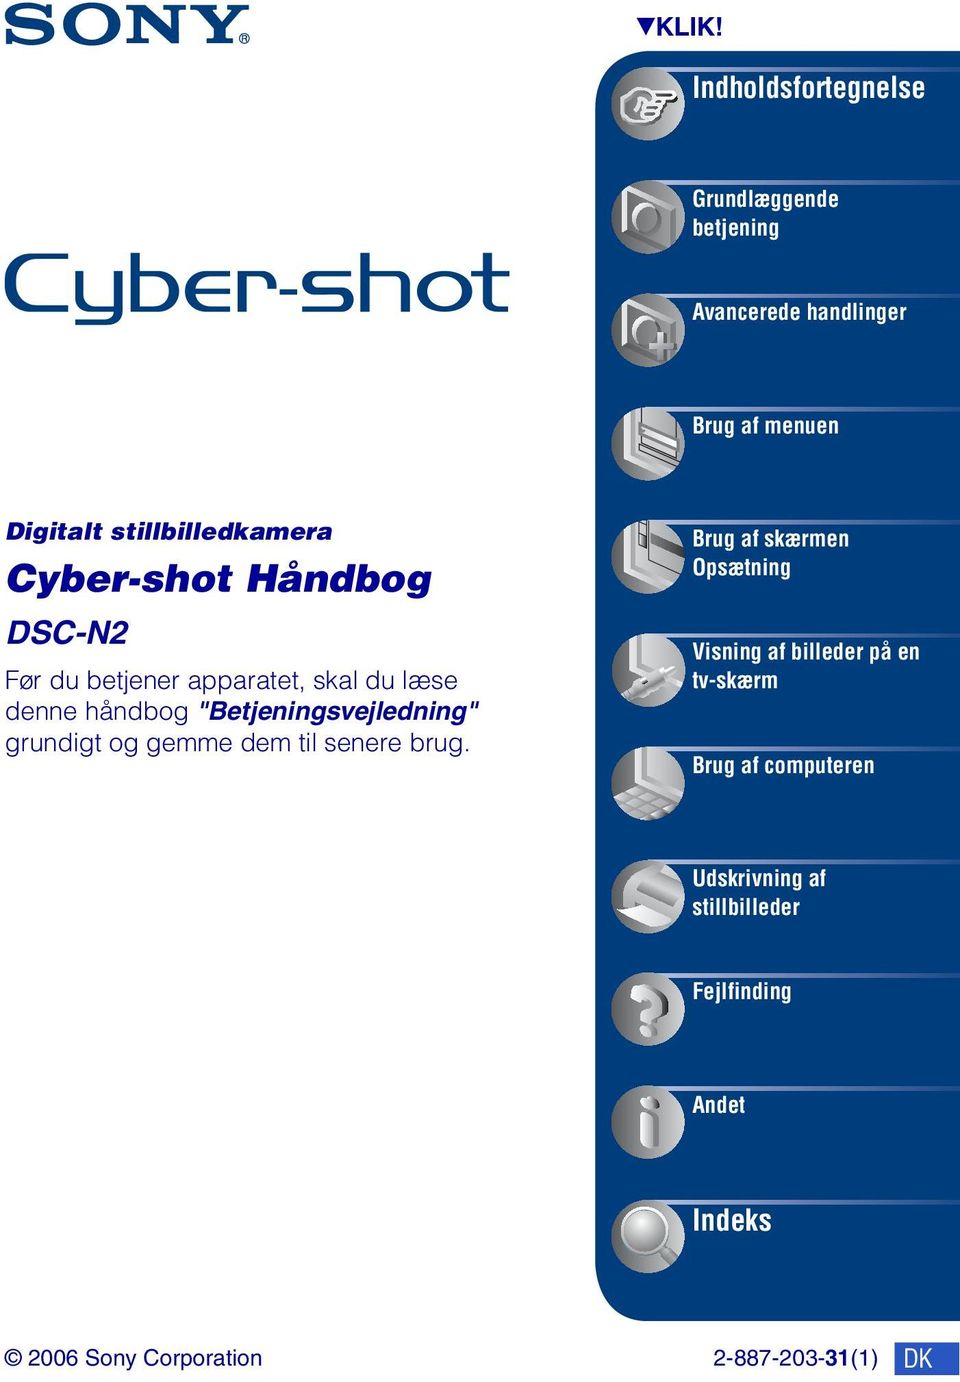 Cyber-shot Håndbog DSC-N2 Før du betjener apparatet, skal du læse denne håndbog "Betjeningsvejledning"